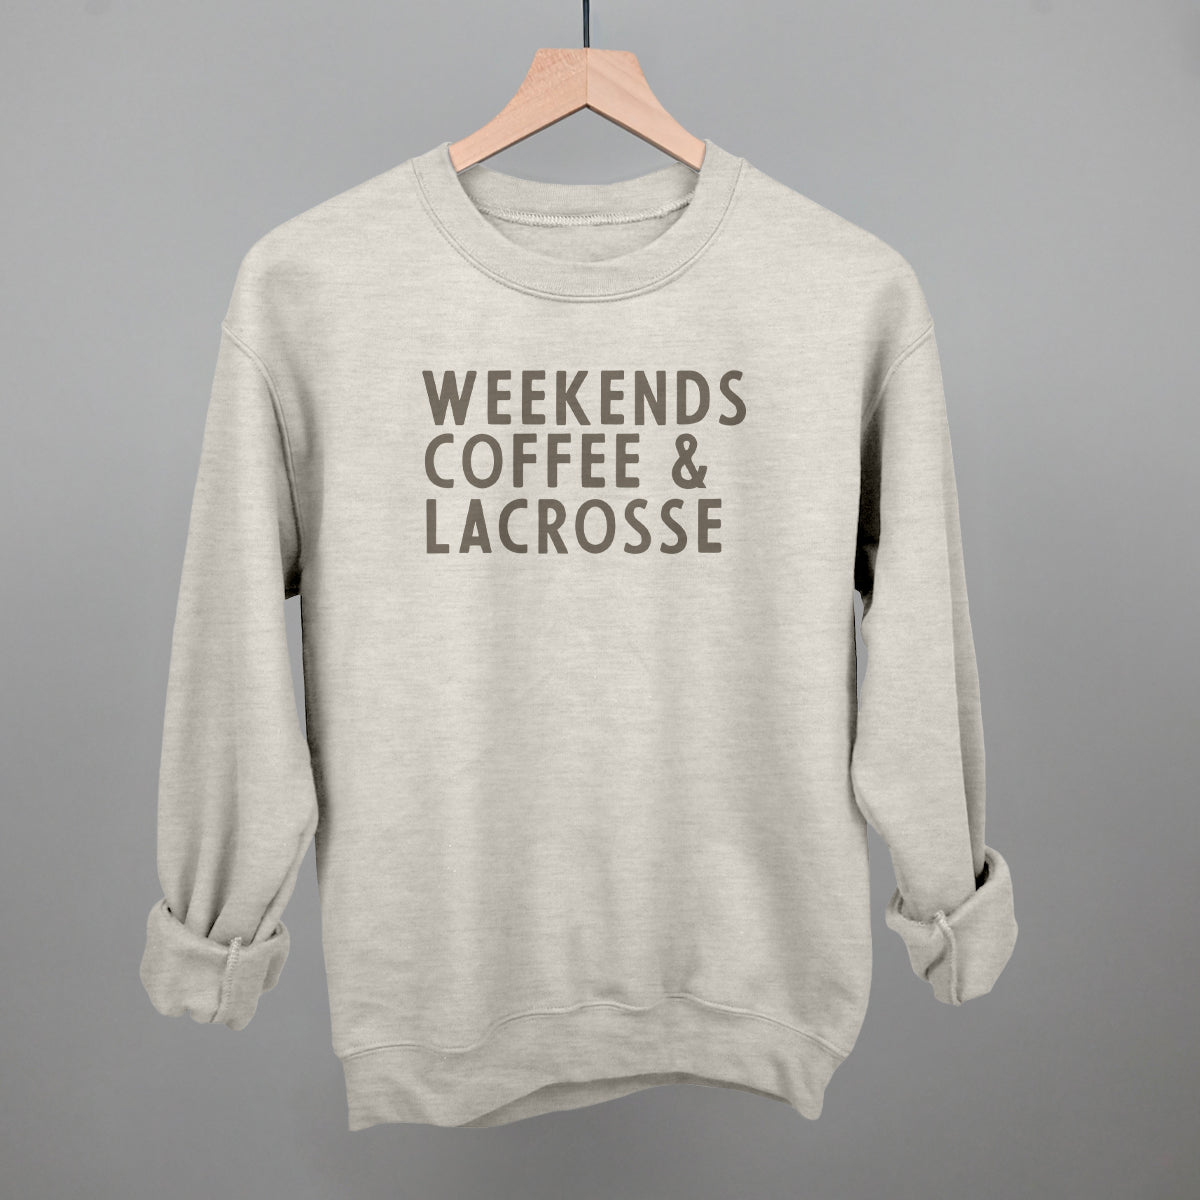 Weekends Coffee & Lacrosse